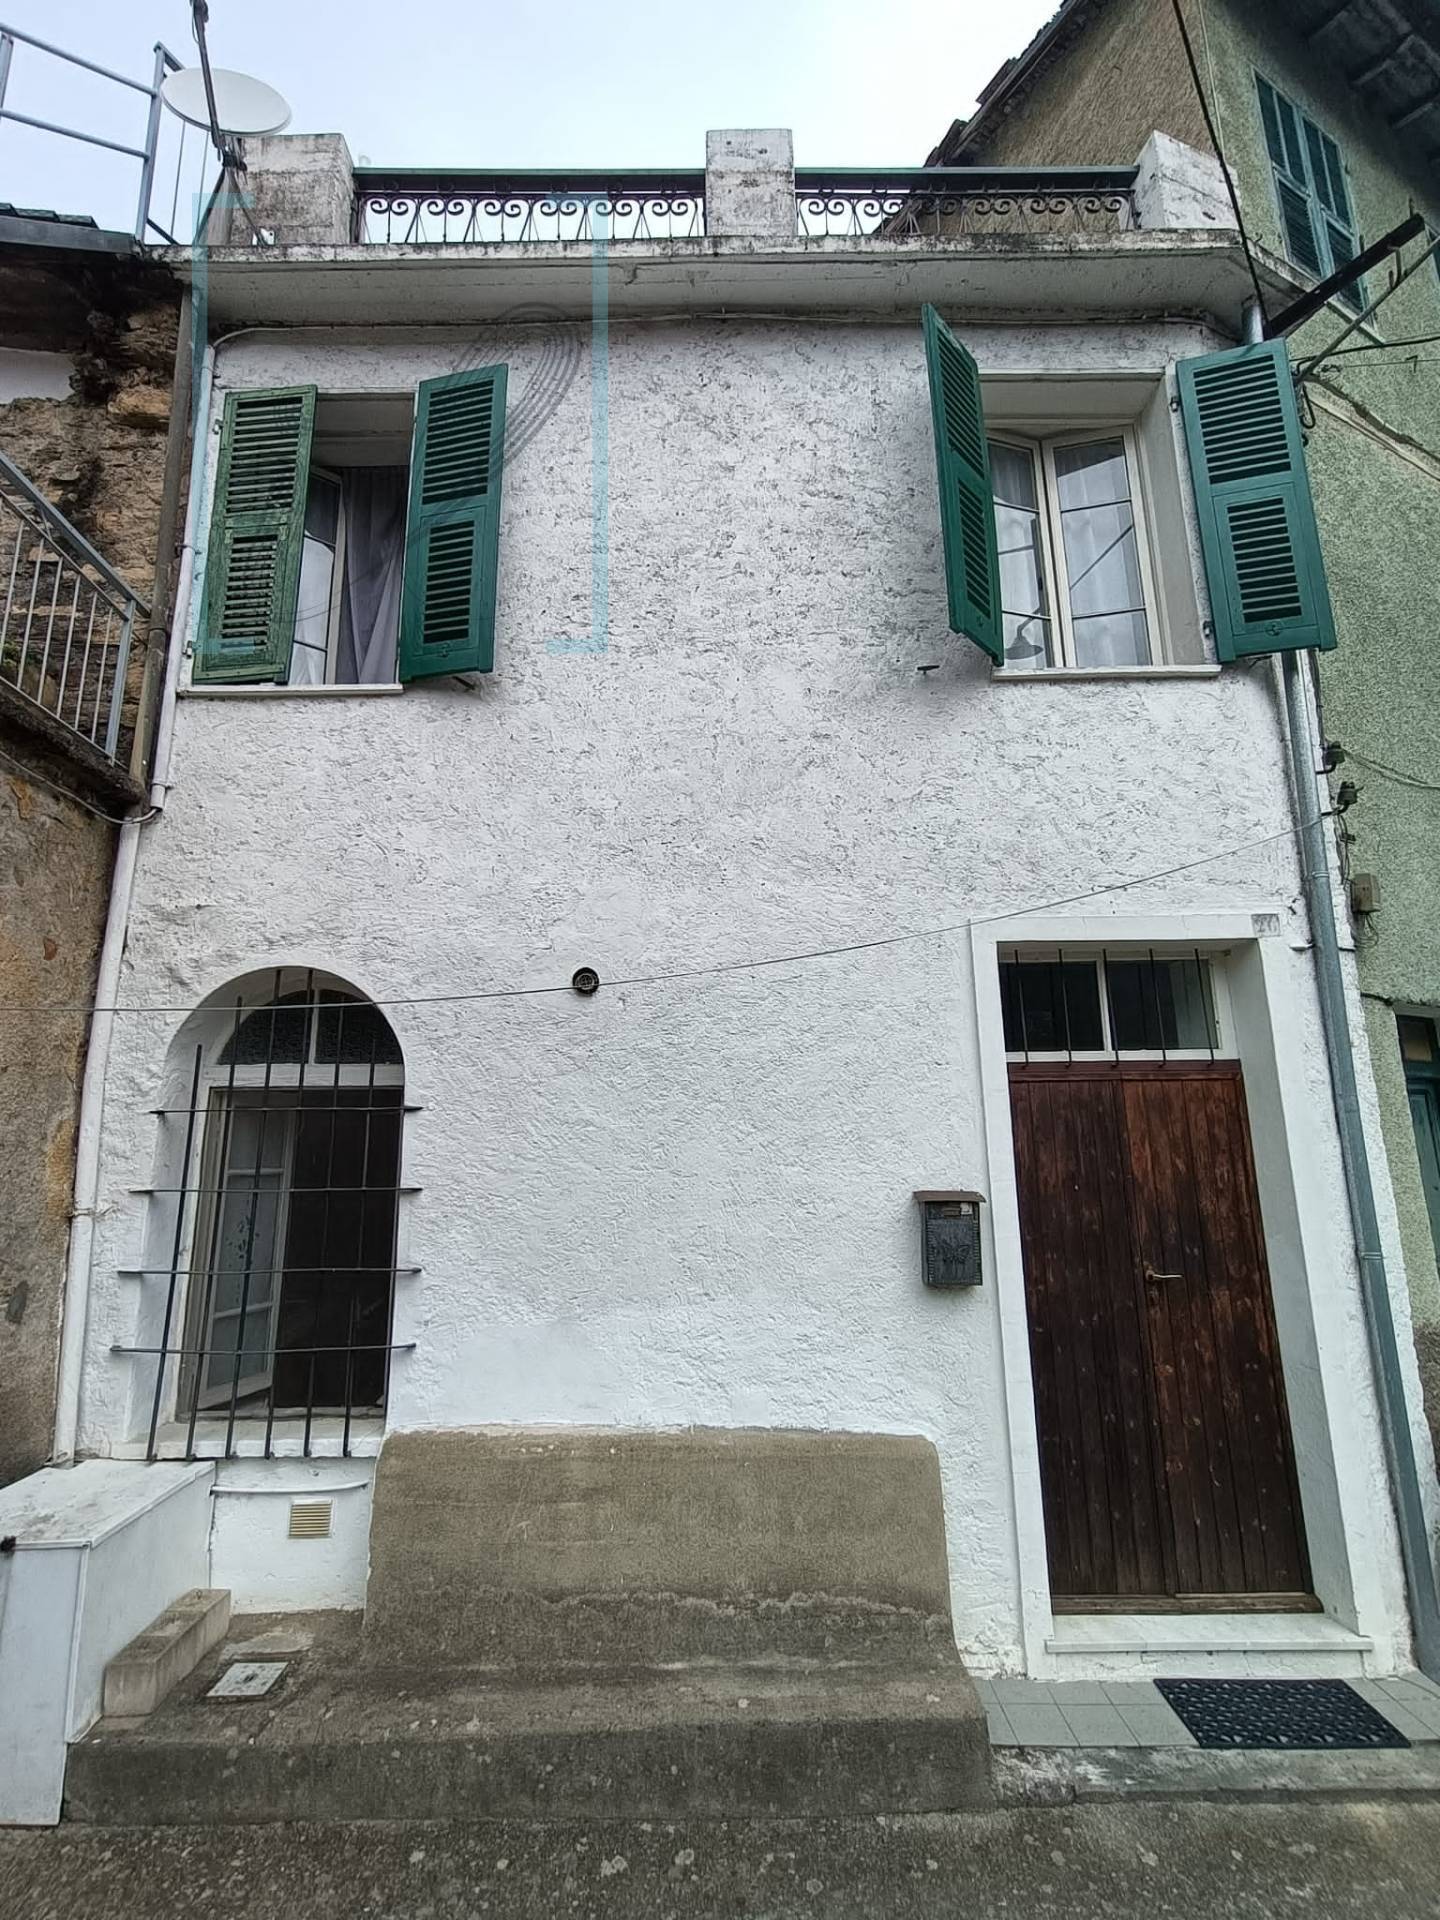 Rustico / Casale in vendita a Pieve di Teco, 6 locali, zona etico, prezzo € 98.000 | PortaleAgenzieImmobiliari.it